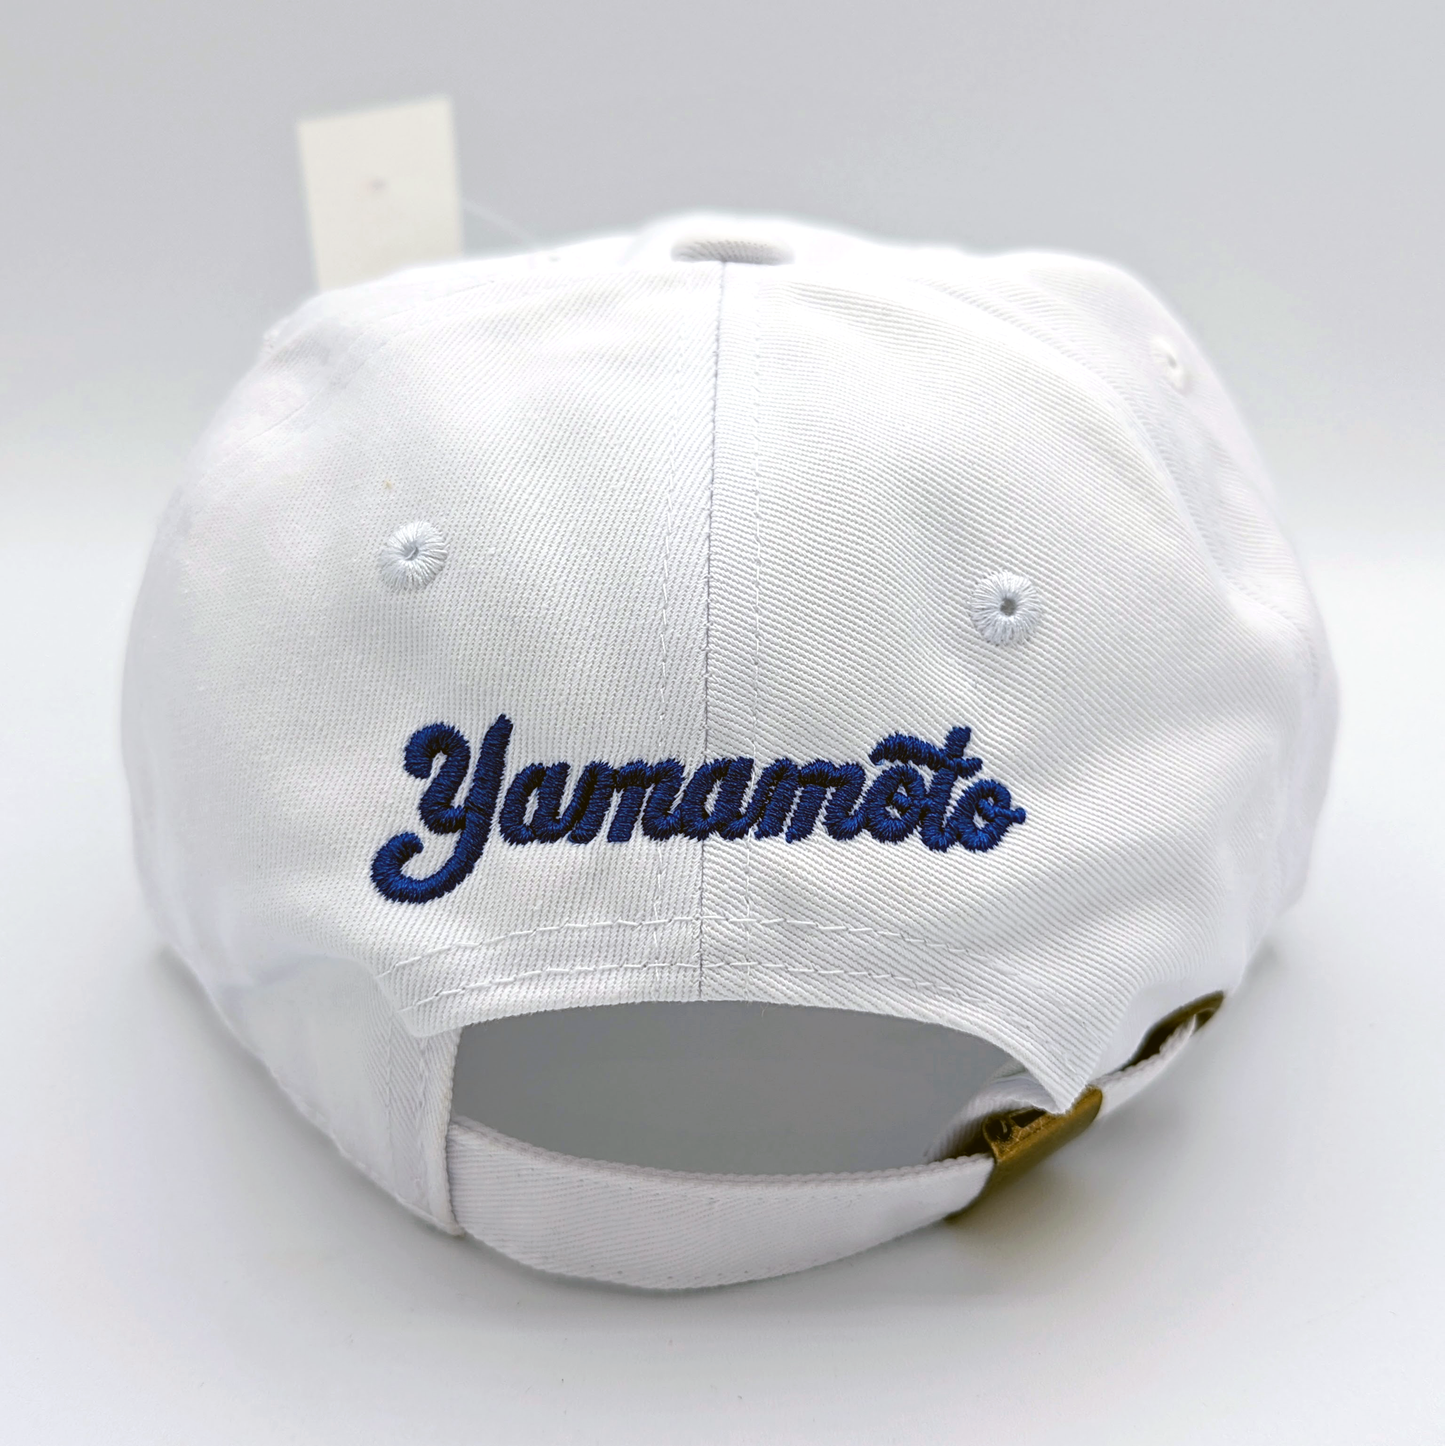 Shohei Ohtani | Yoshinobu Yamamoto | Premium Japanese Dodger's Hat